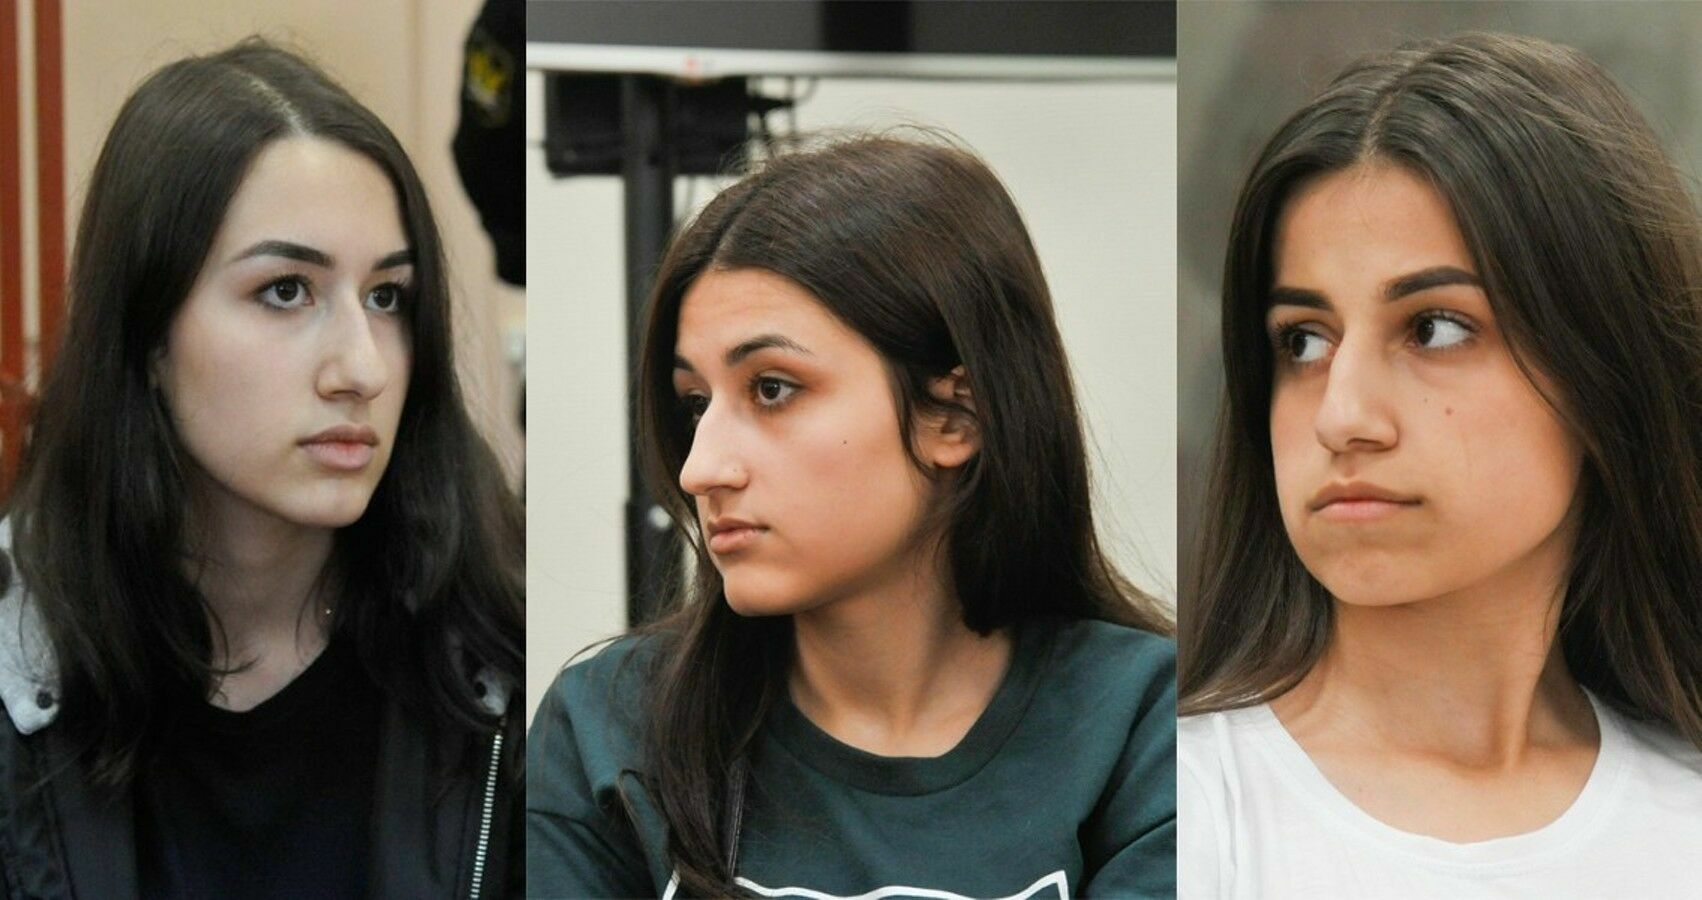 Сестры Хачатурян признаны потерпевшими по делу о насилии со стороны отца